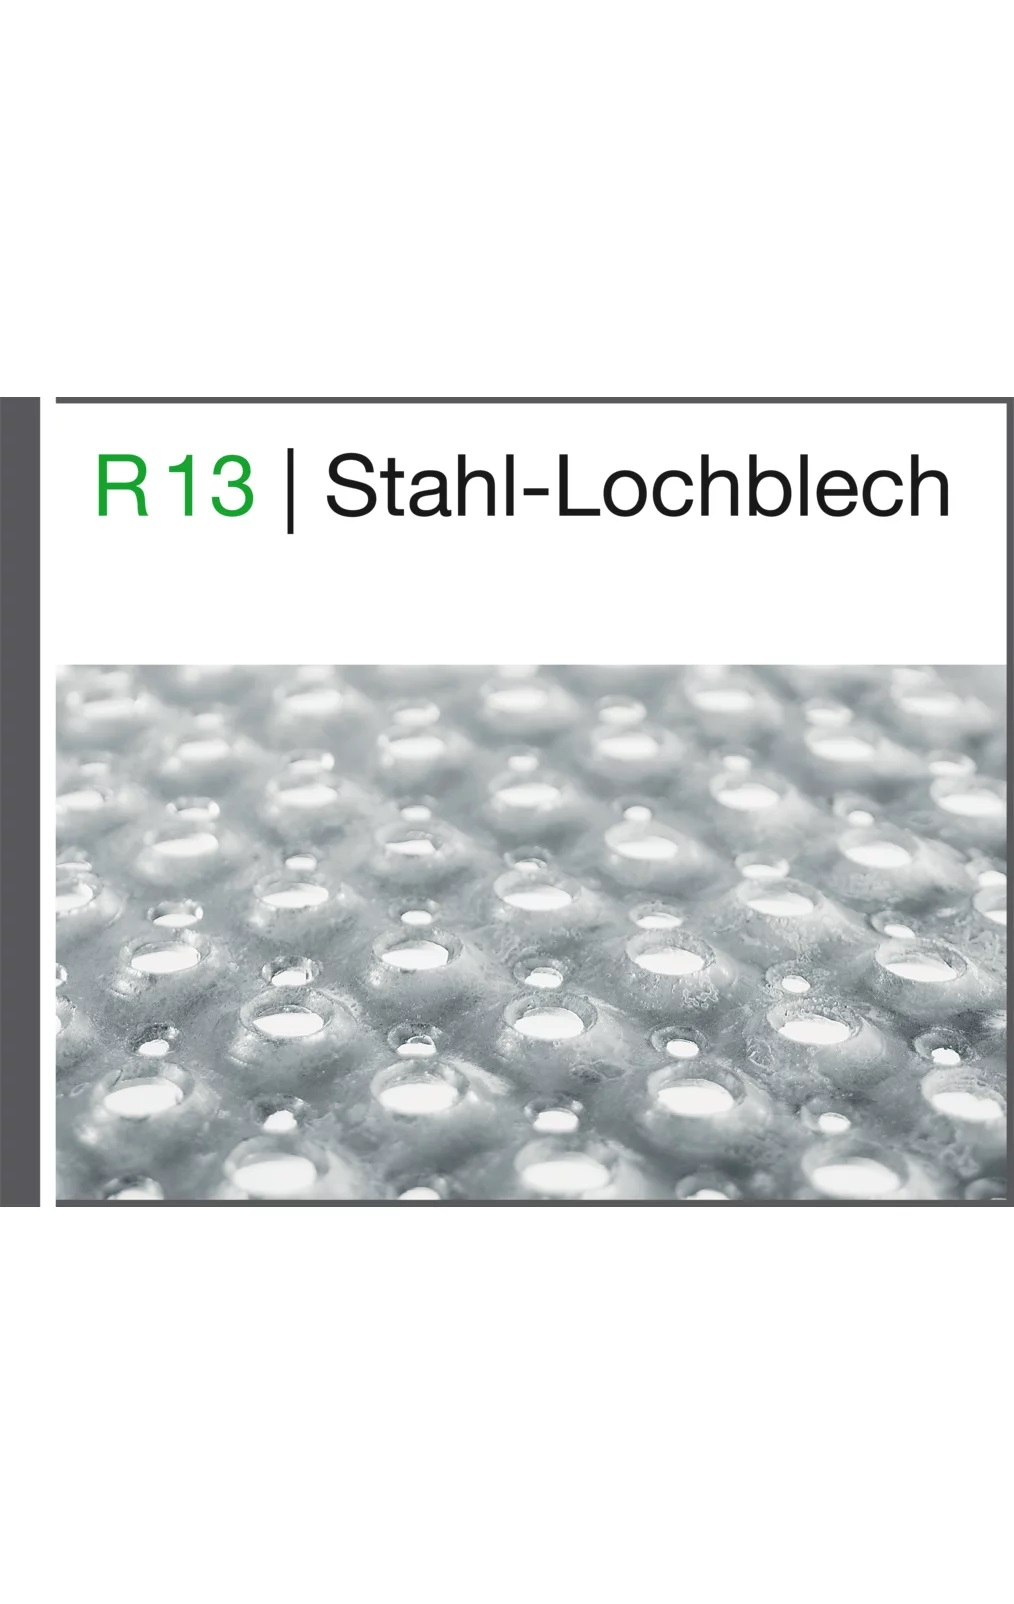 Mehrpreis pro Stufenbelag Stahl-Lochblech, Breite 1000 mm